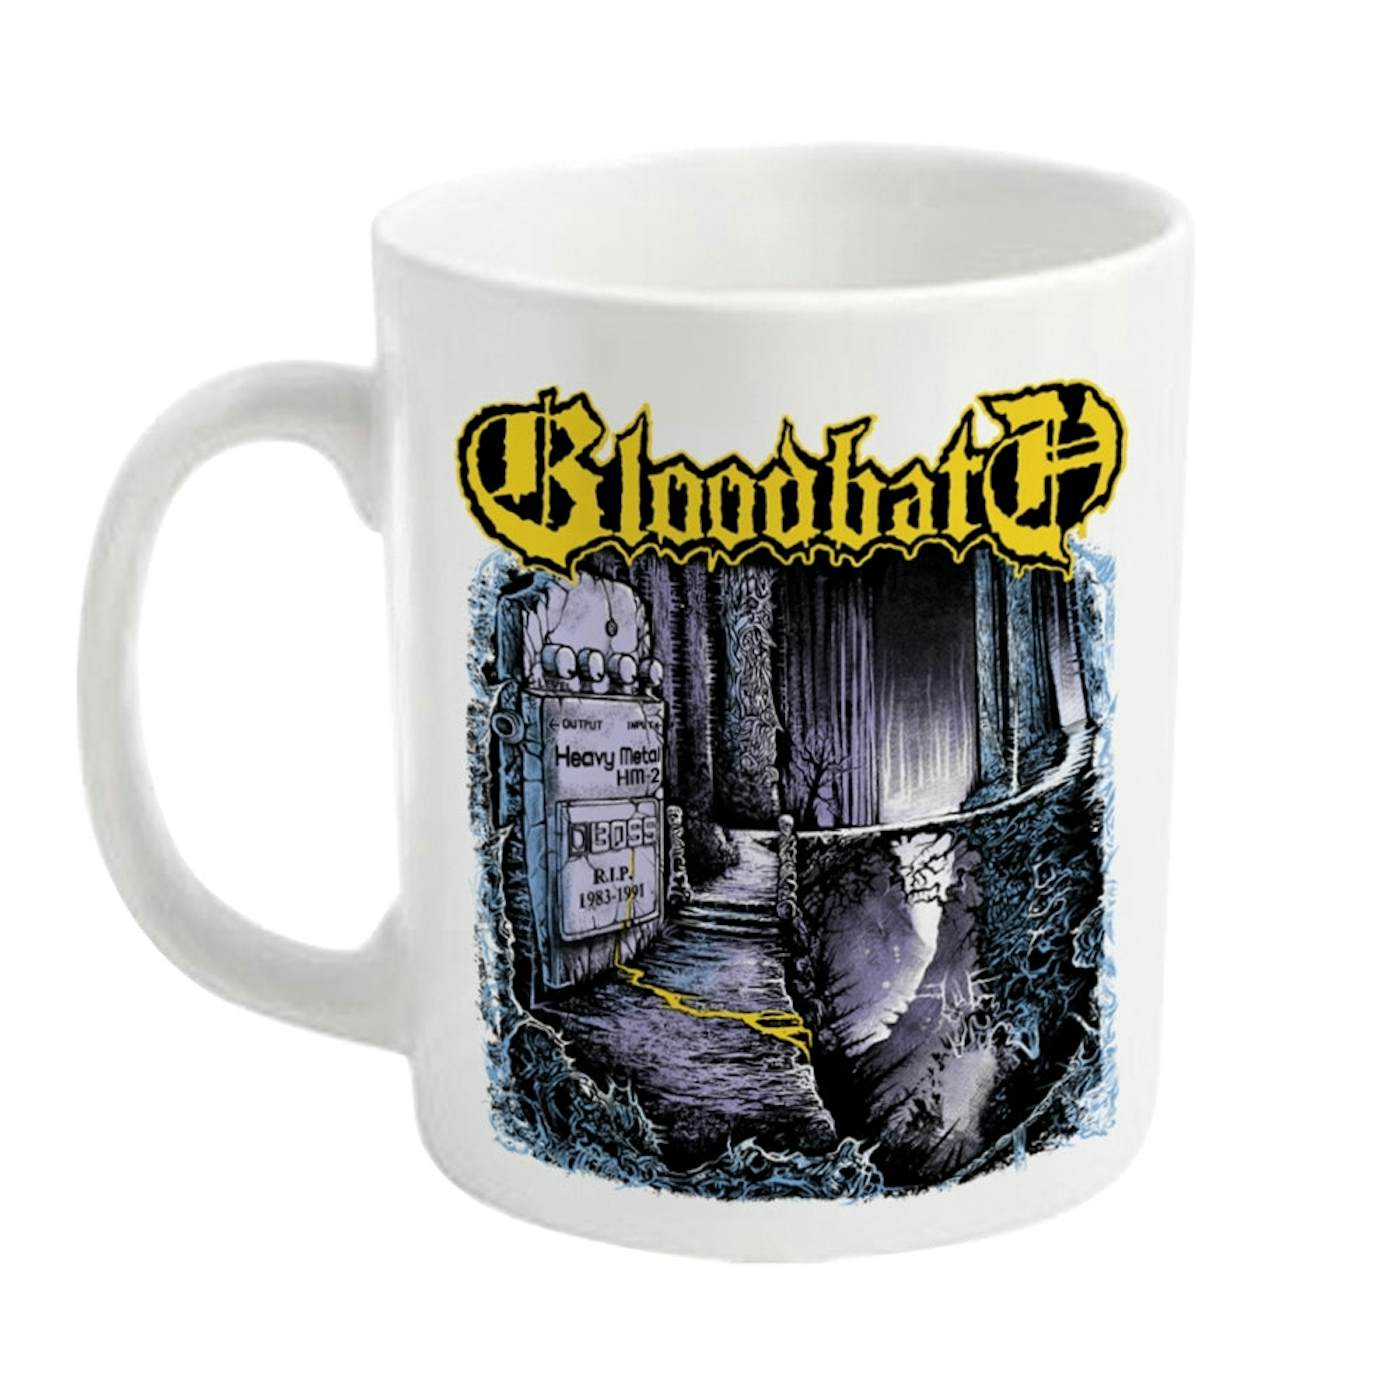 Bloodbath Mug - Right Hand Wrath